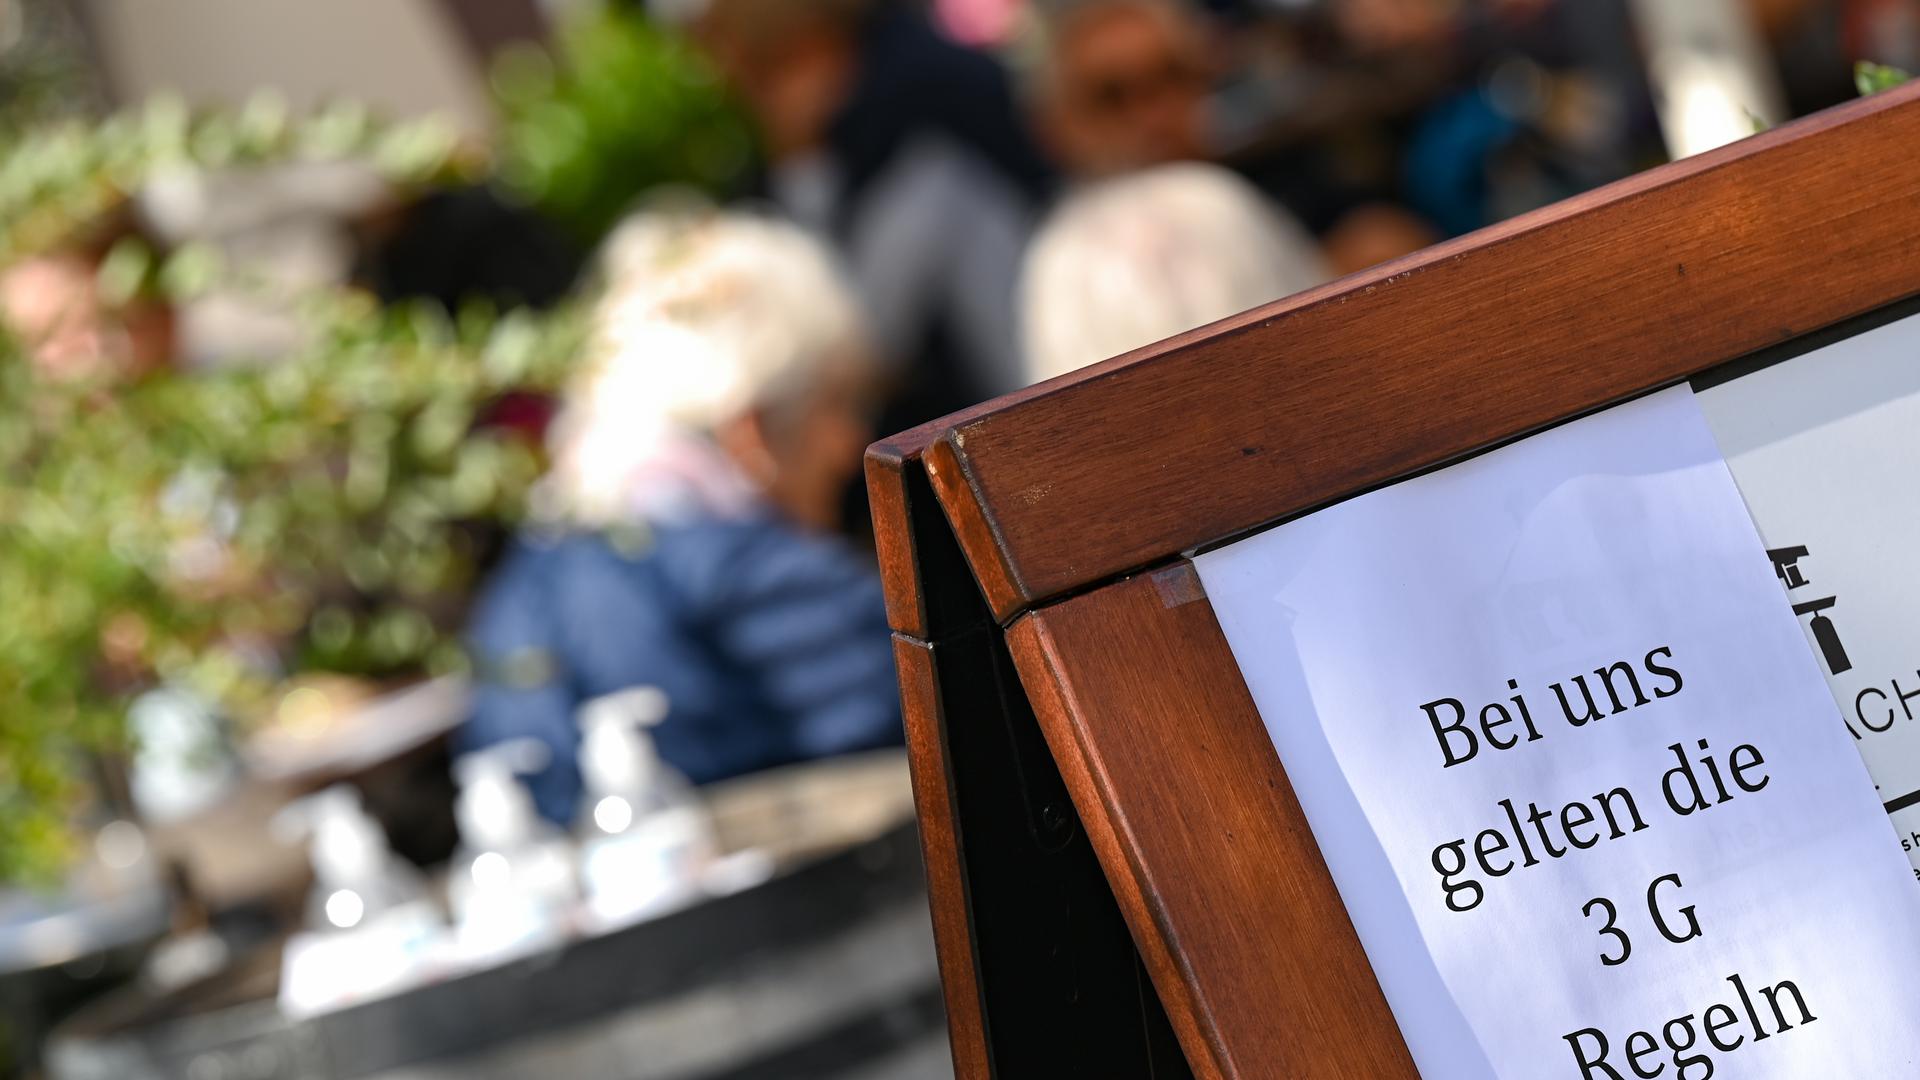 Vor dem Café Hauptwache in der Frankfurter Innenstadt ist eine Tafel mit der Aufschrift «Bei uns gelten die 3 G Regeln» aufgestellt. Rund eine Woche nach dem Start des 2G-Optionsmodells bei den hessischen Corona-Regeln ziehen Gastgewerbe und Friseure ein durchweg positives Resümee. (zu dpa «2G-Regeln: Gastgewerbe und Friseure sehen neue Vorgaben positiv») +++ dpa-Bildfunk +++